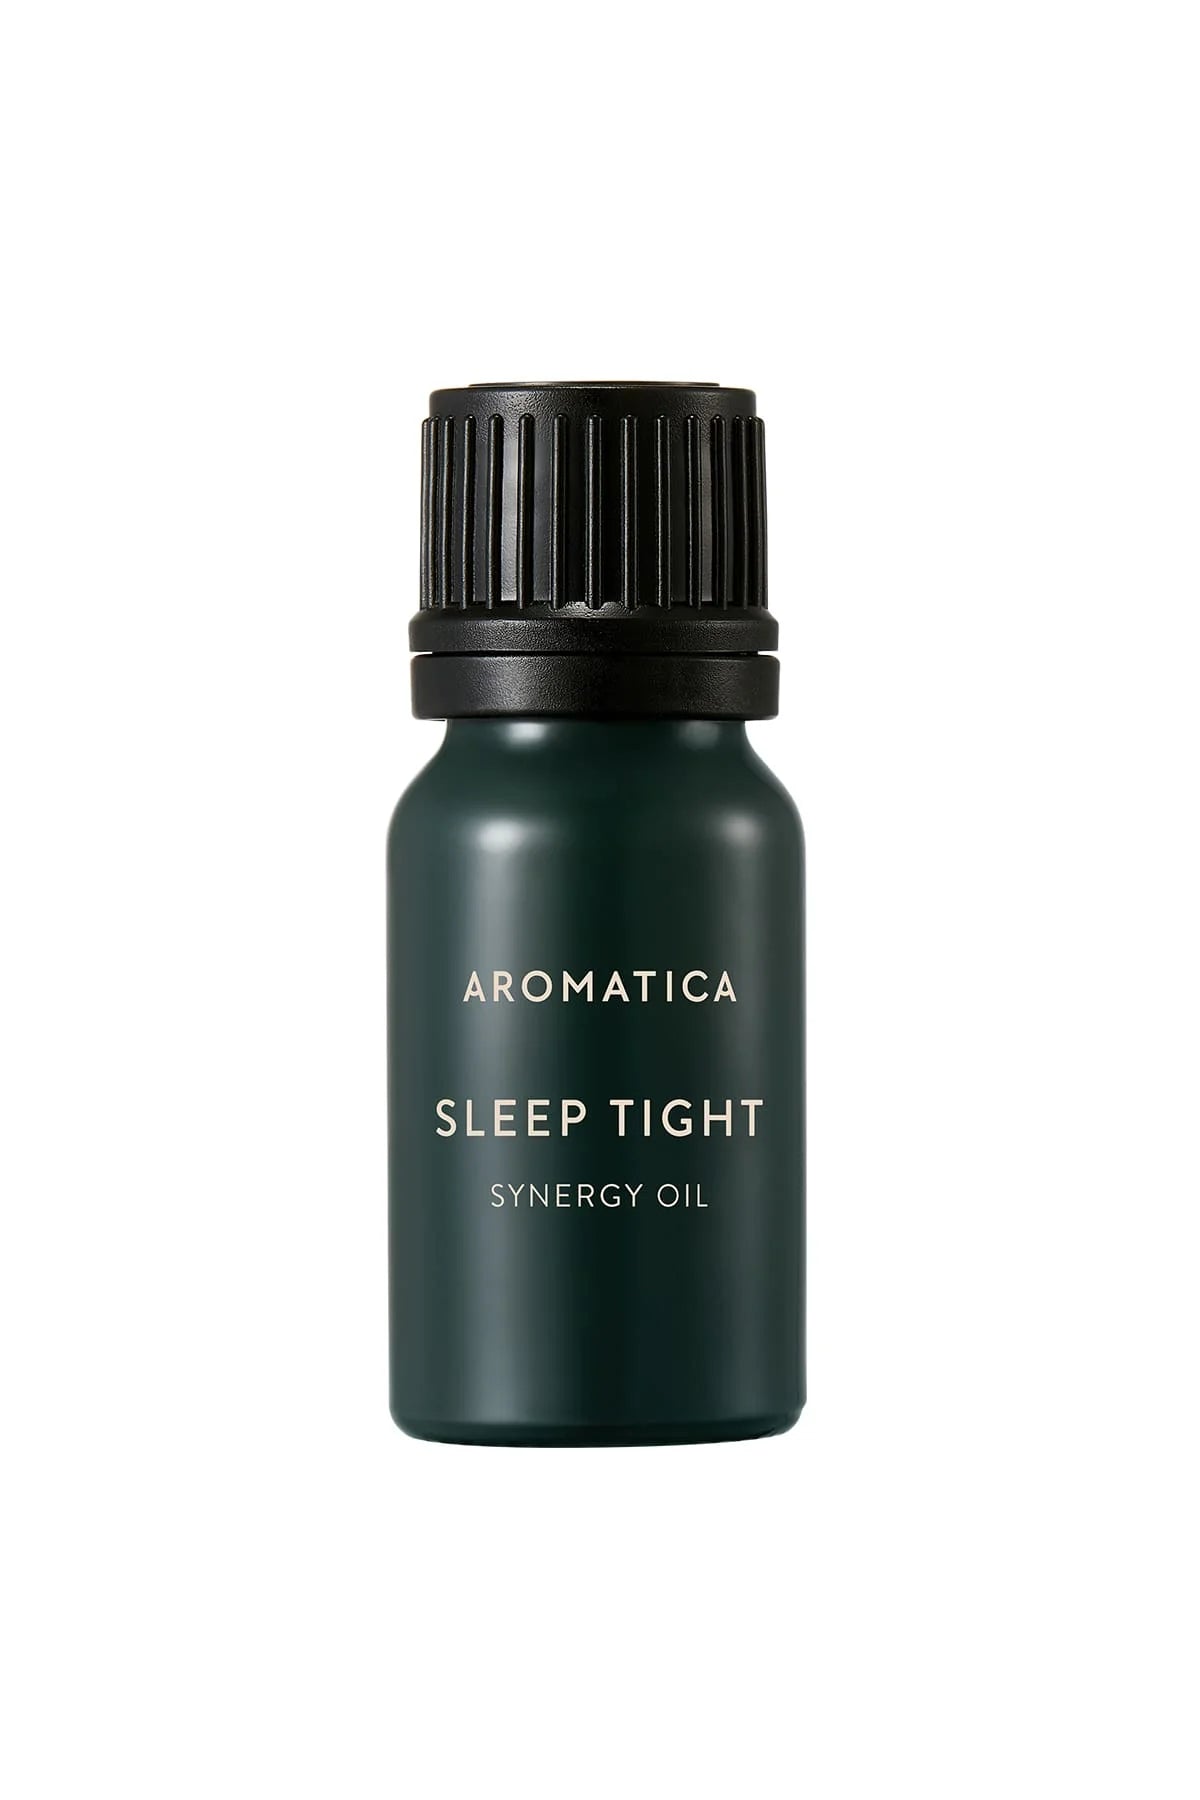 Aromatica Sleep Tight Synergy Oil